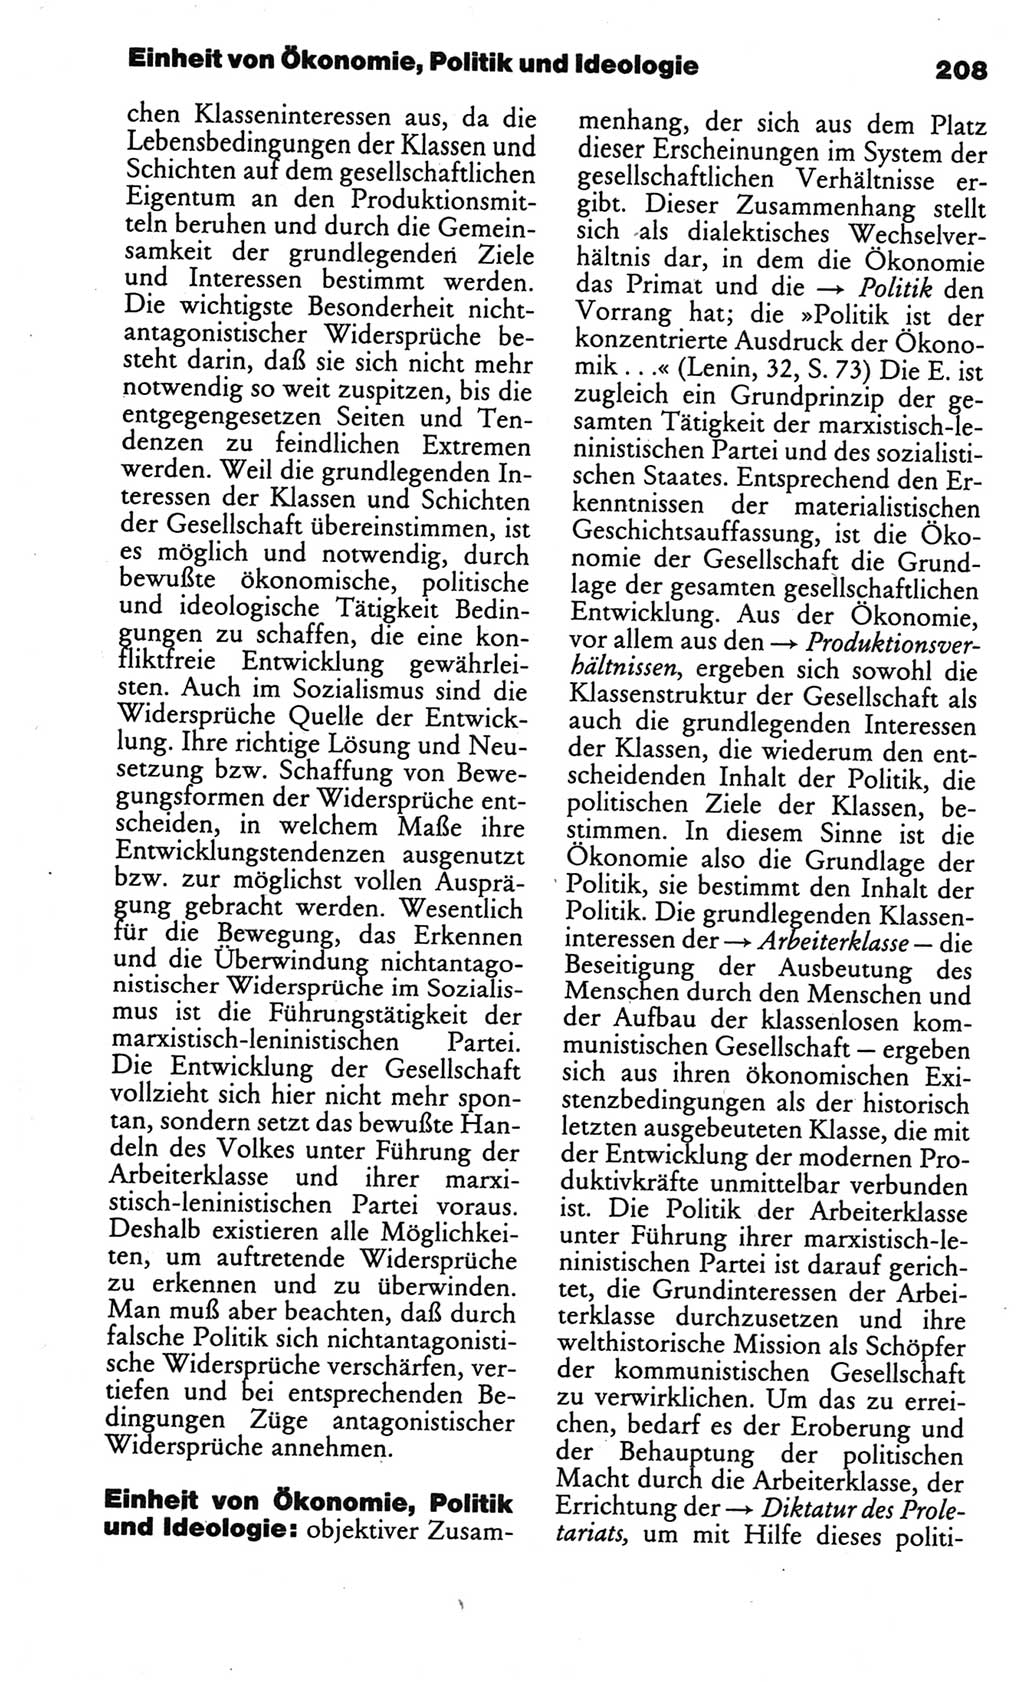 Kleines politisches Wörterbuch [Deutsche Demokratische Republik (DDR)] 1986, Seite 208 (Kl. pol. Wb. DDR 1986, S. 208)